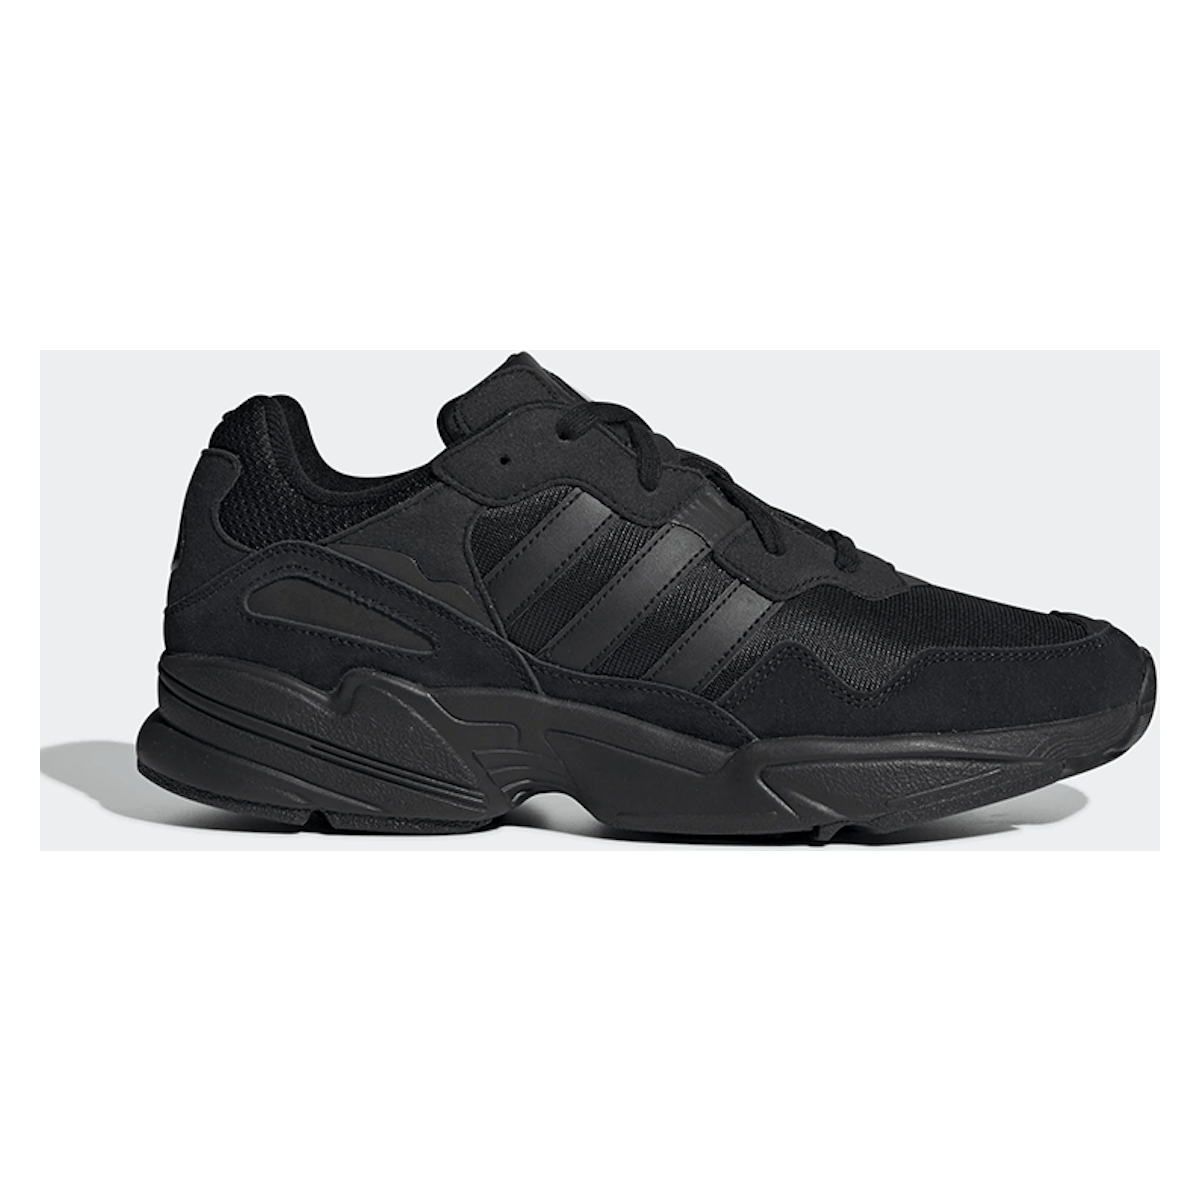 Adidas Yung-96 "Triple Black"